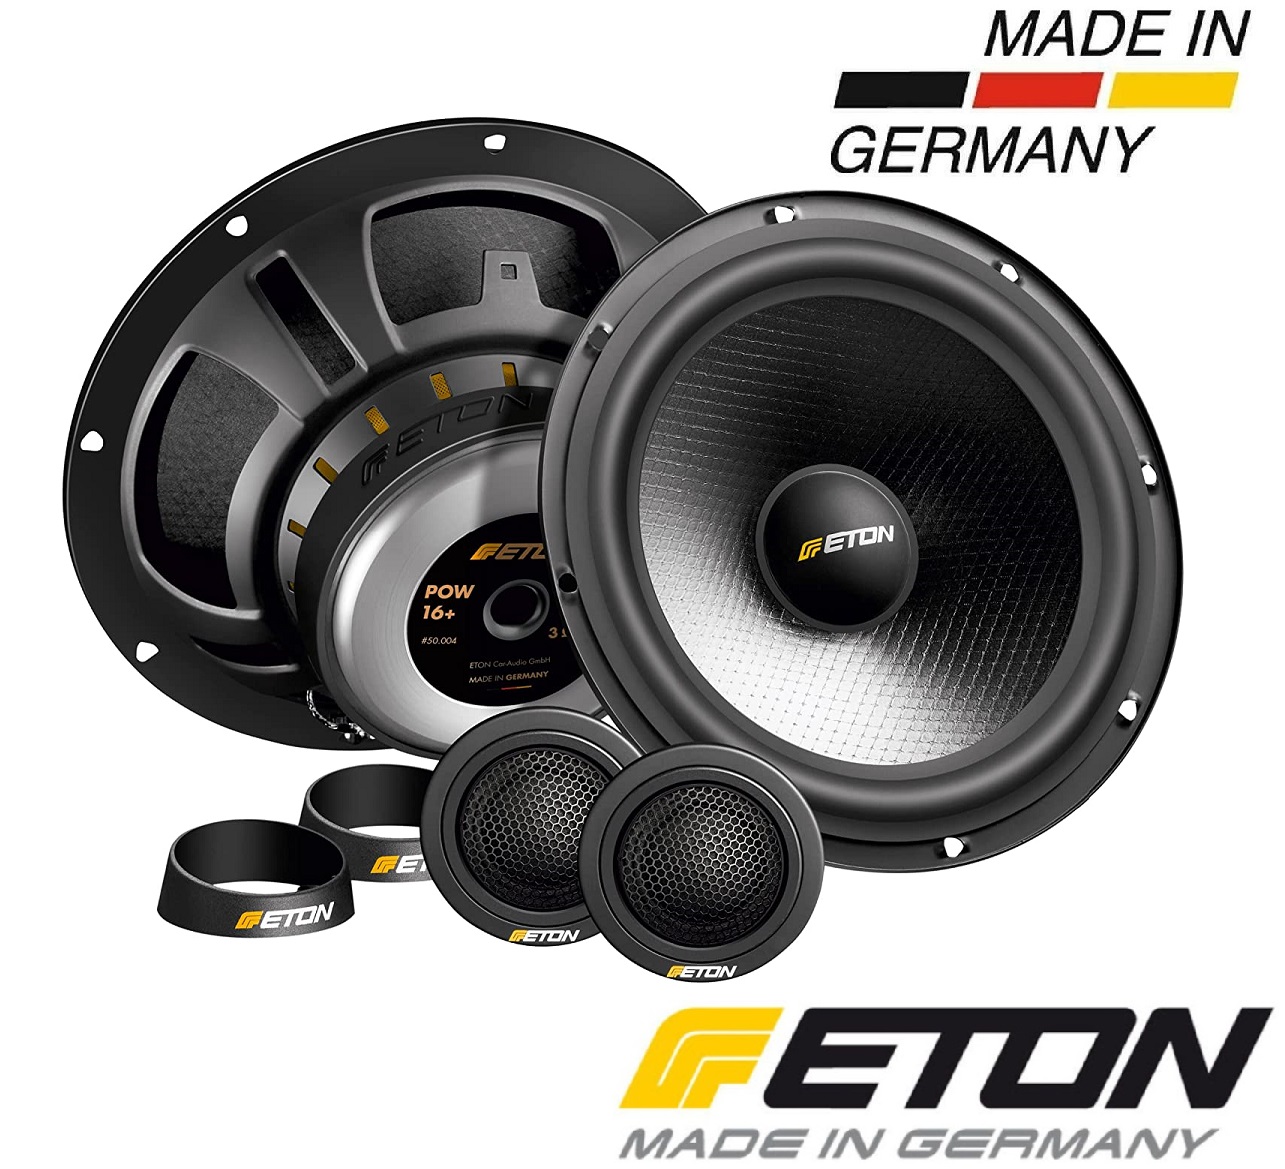 ETON POW 16+ 2-Wege Komponenten System 16,5 cm , Auto Lautsprecher Made in Germany